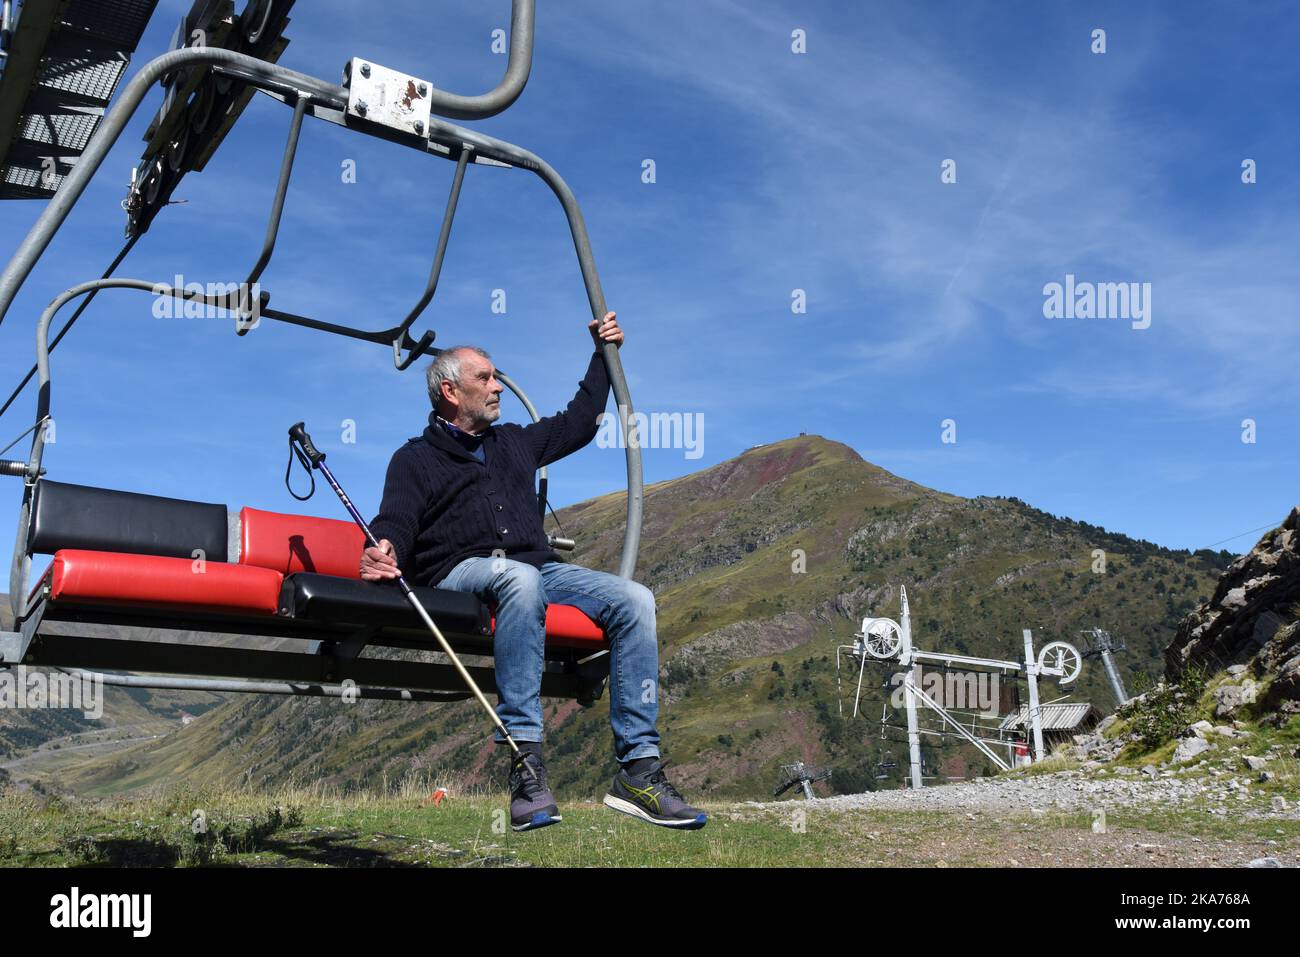 Un marcheur touristique assis sur une remontée mécanique à l'automne Col du Somport dans les pyrénées, à la frontière de la France et de l'Espagne Canfranc Espagne Banque D'Images